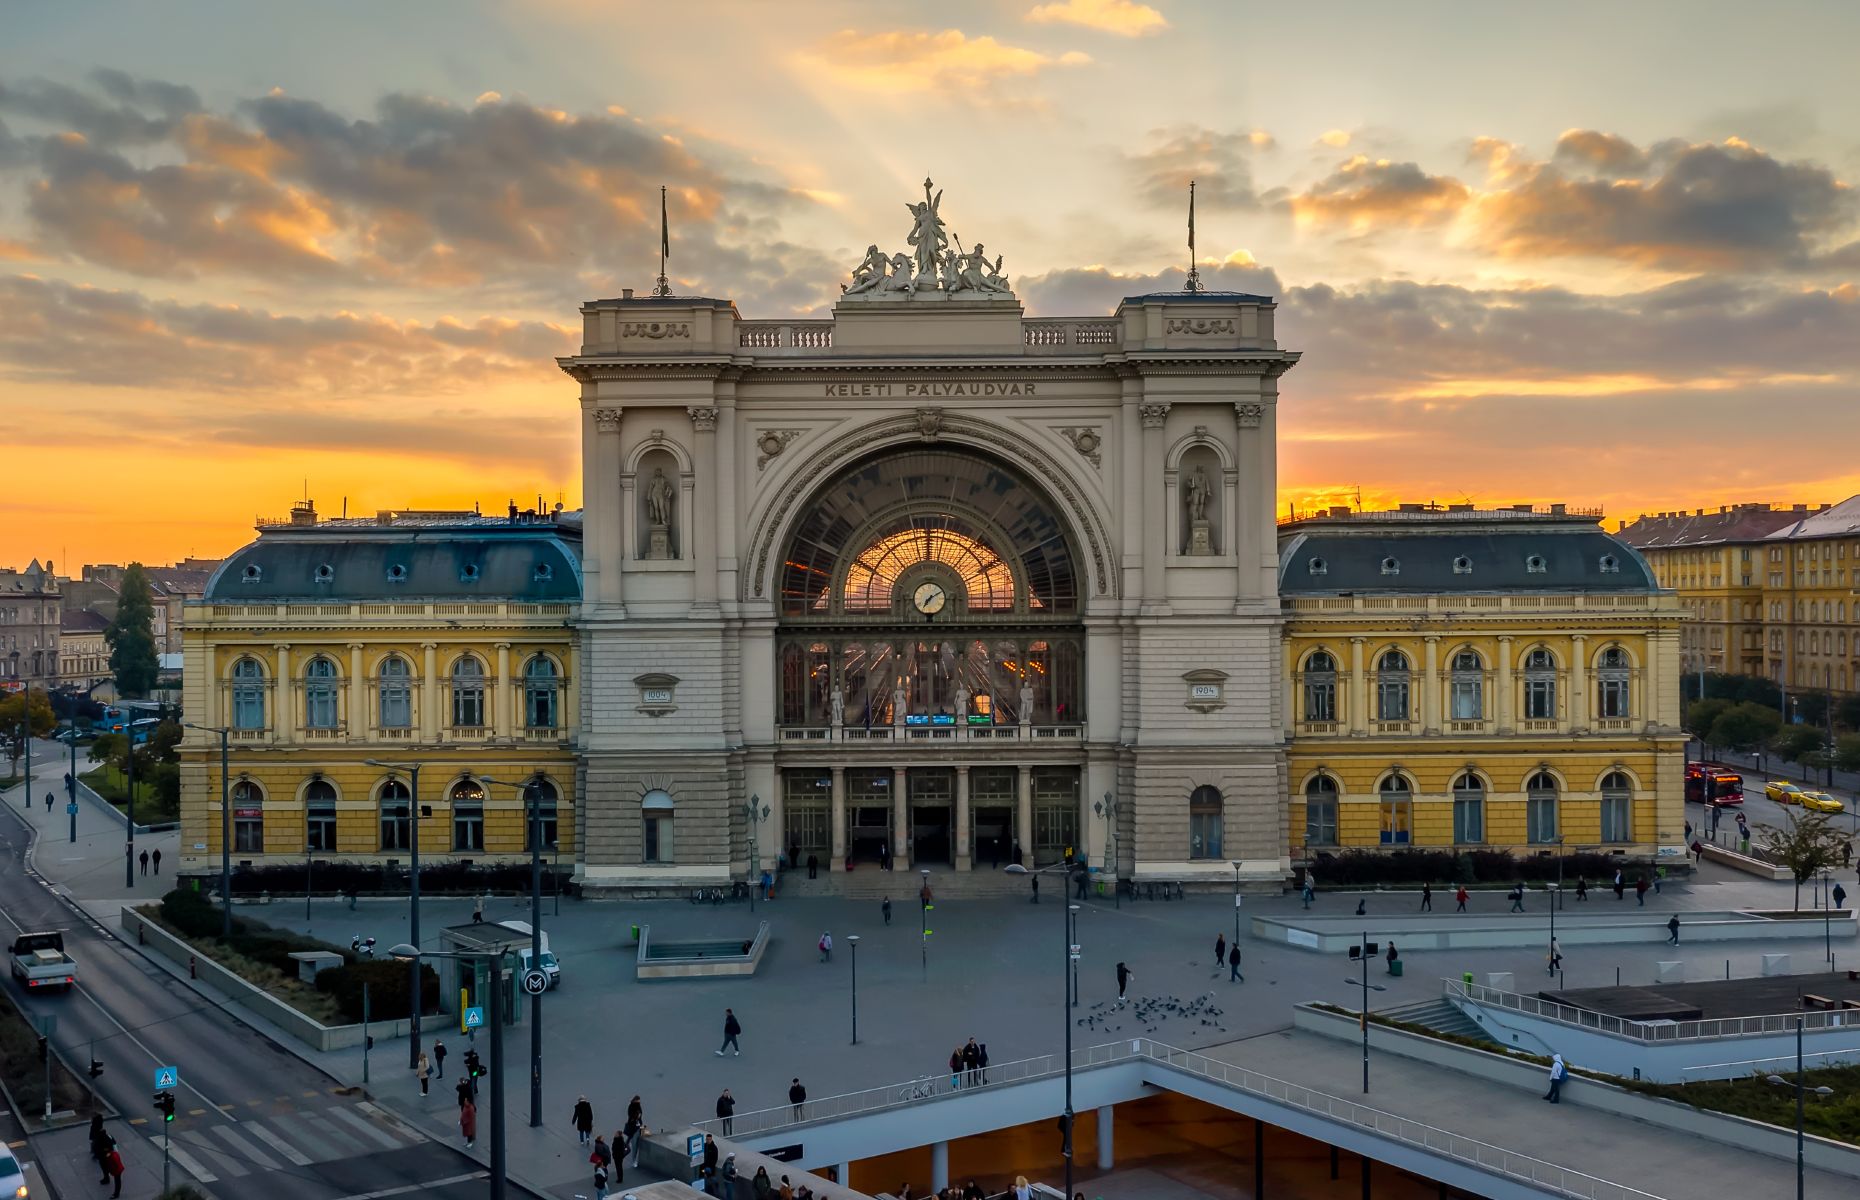 Budapest train station at sunset (Image: Geza Kurka_Hungary/Shutterstock)